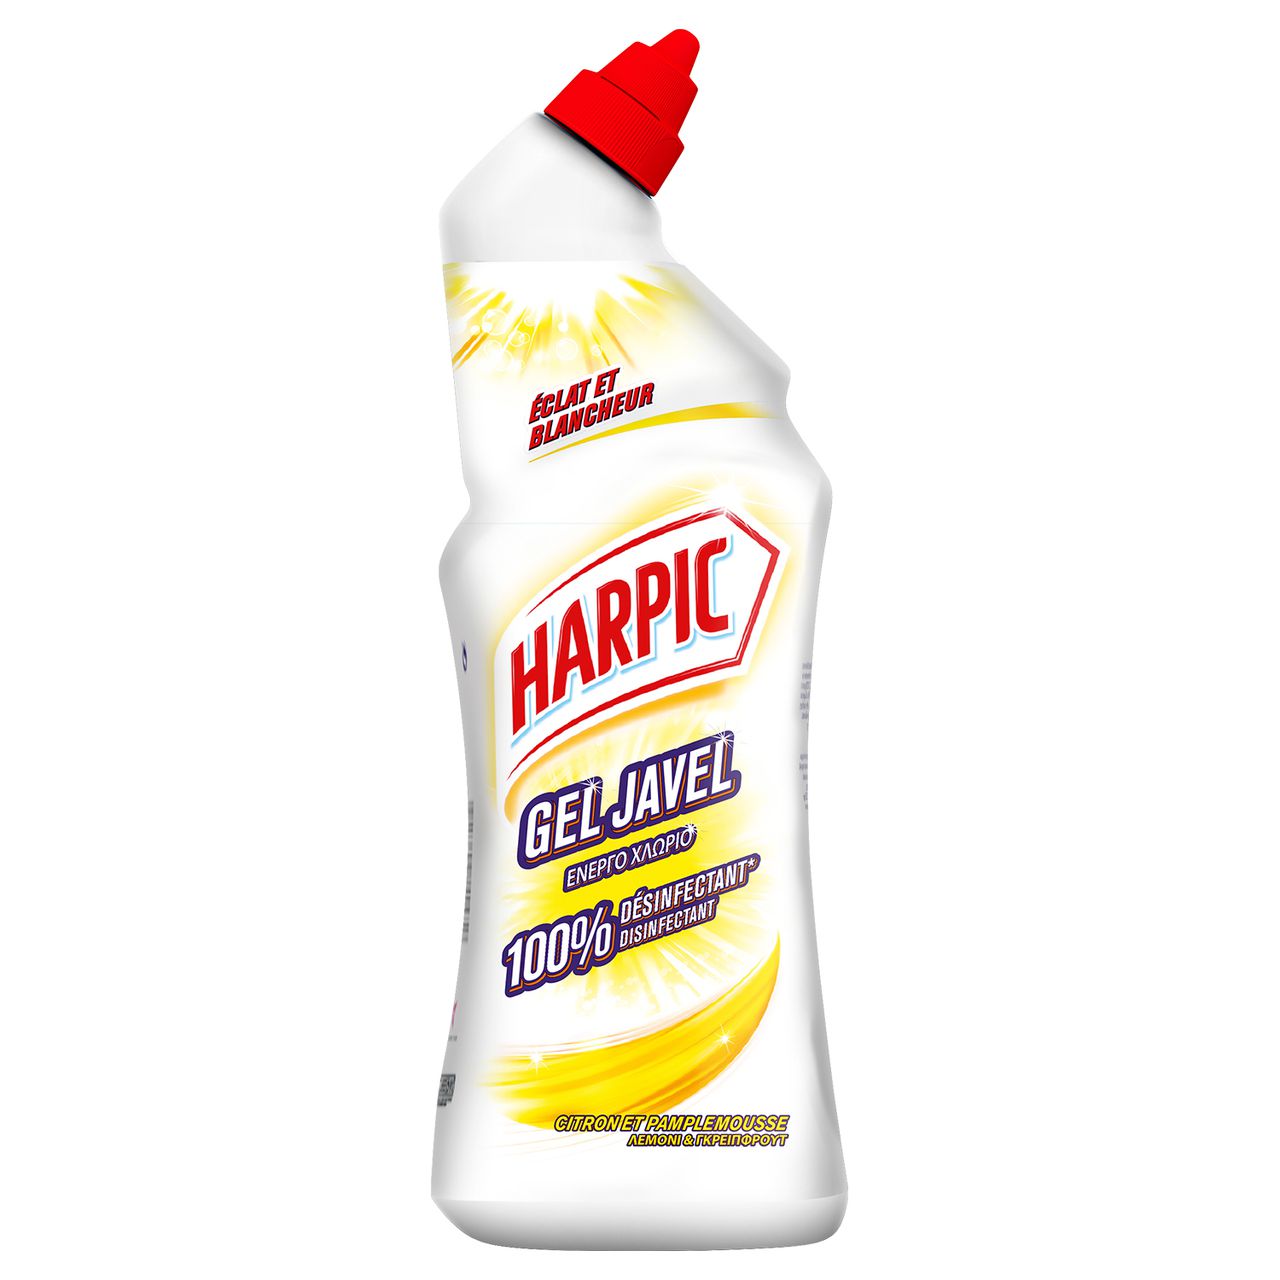 Harpic Gel javel WC désinfectant Citron et Pamplemousse - Flacon de 750 ml  - Détergentsfavorable à acheter dans notre magasin